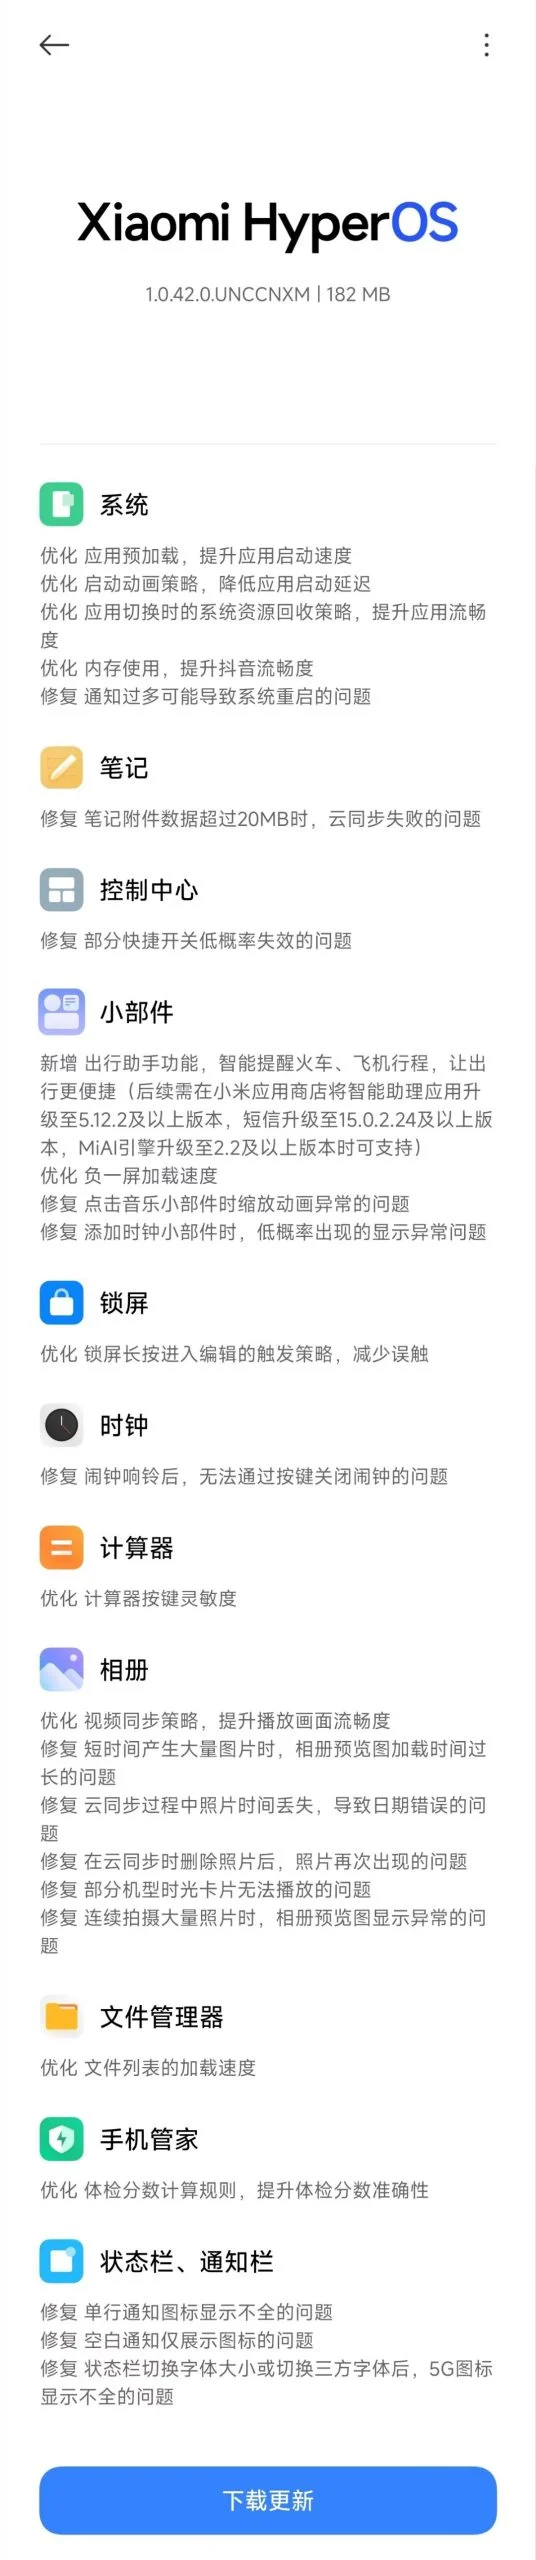 Xiaomi выпустила новое обновление под условным названием HyperOS 1.5